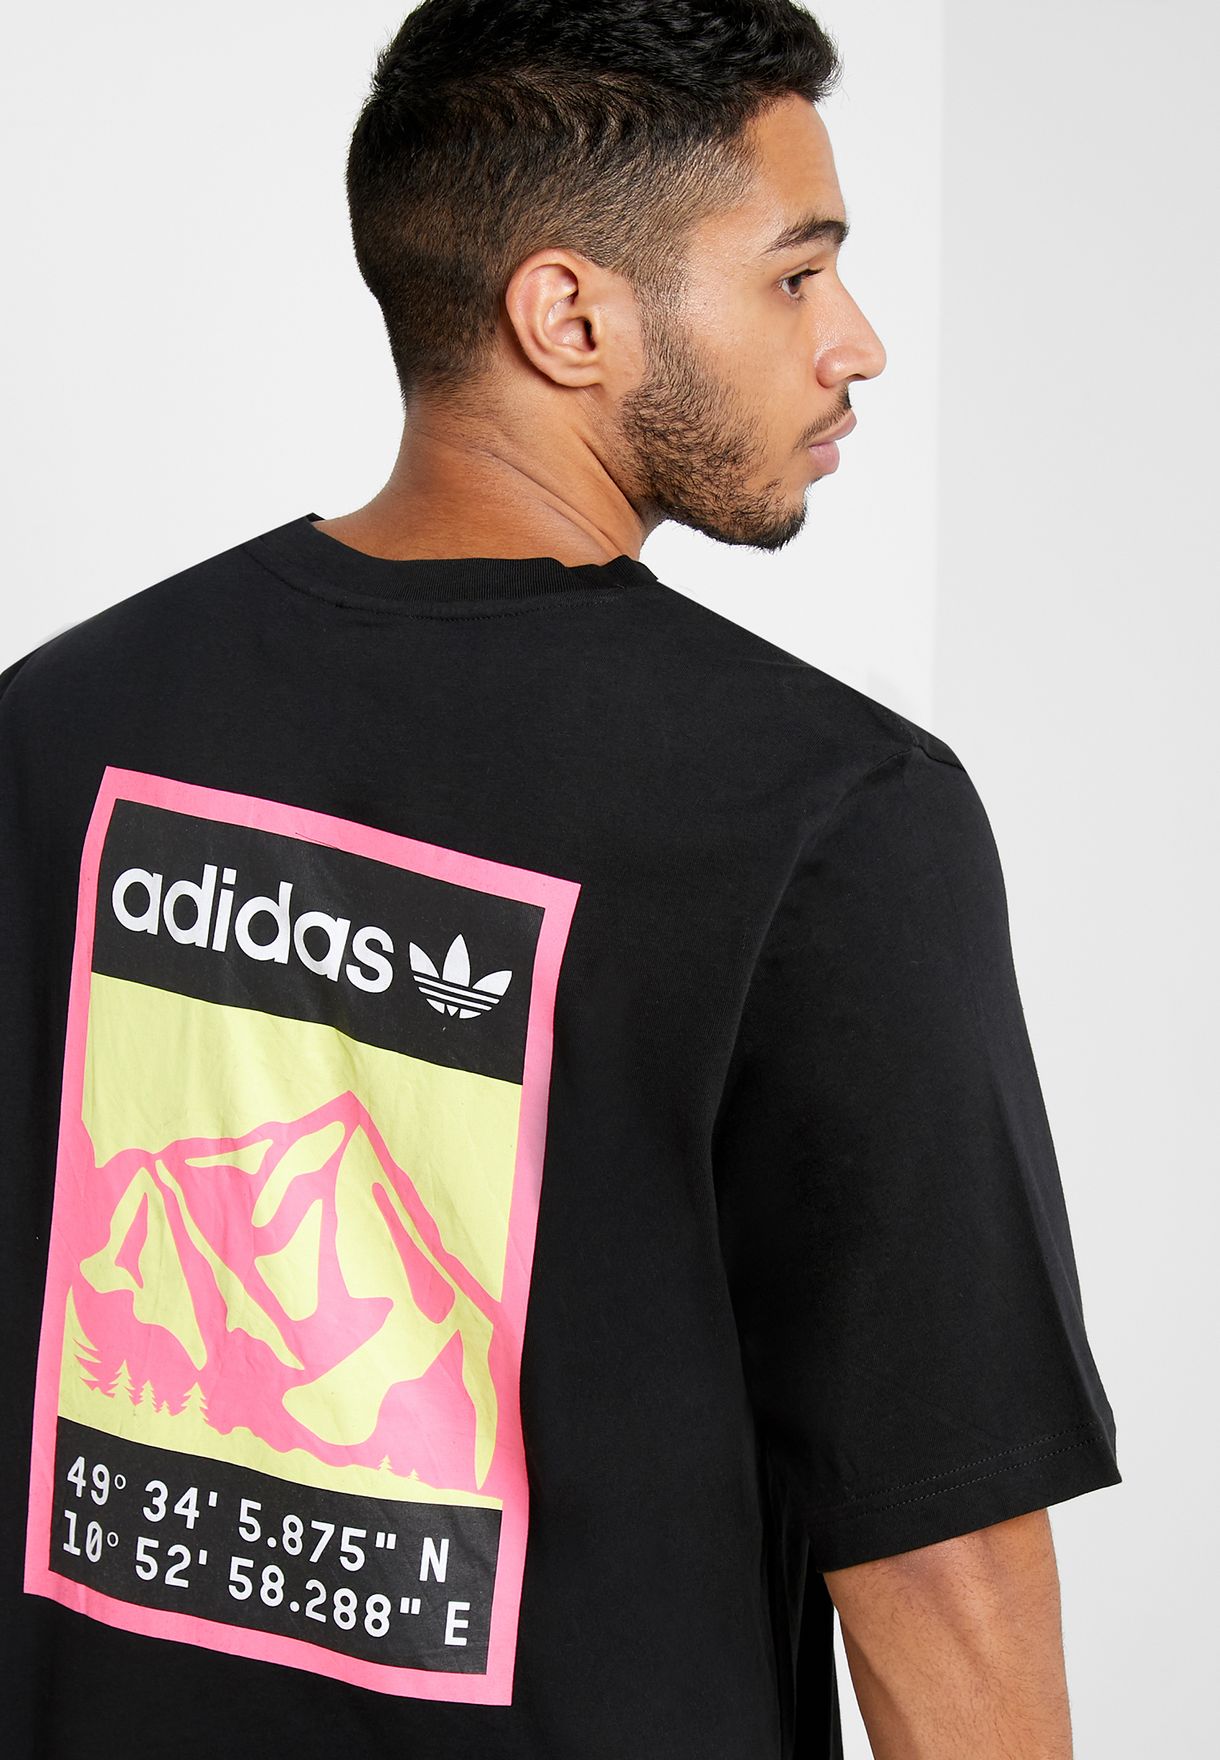 buy \u003e adidas shirt logo on back, Up to 70% OFF